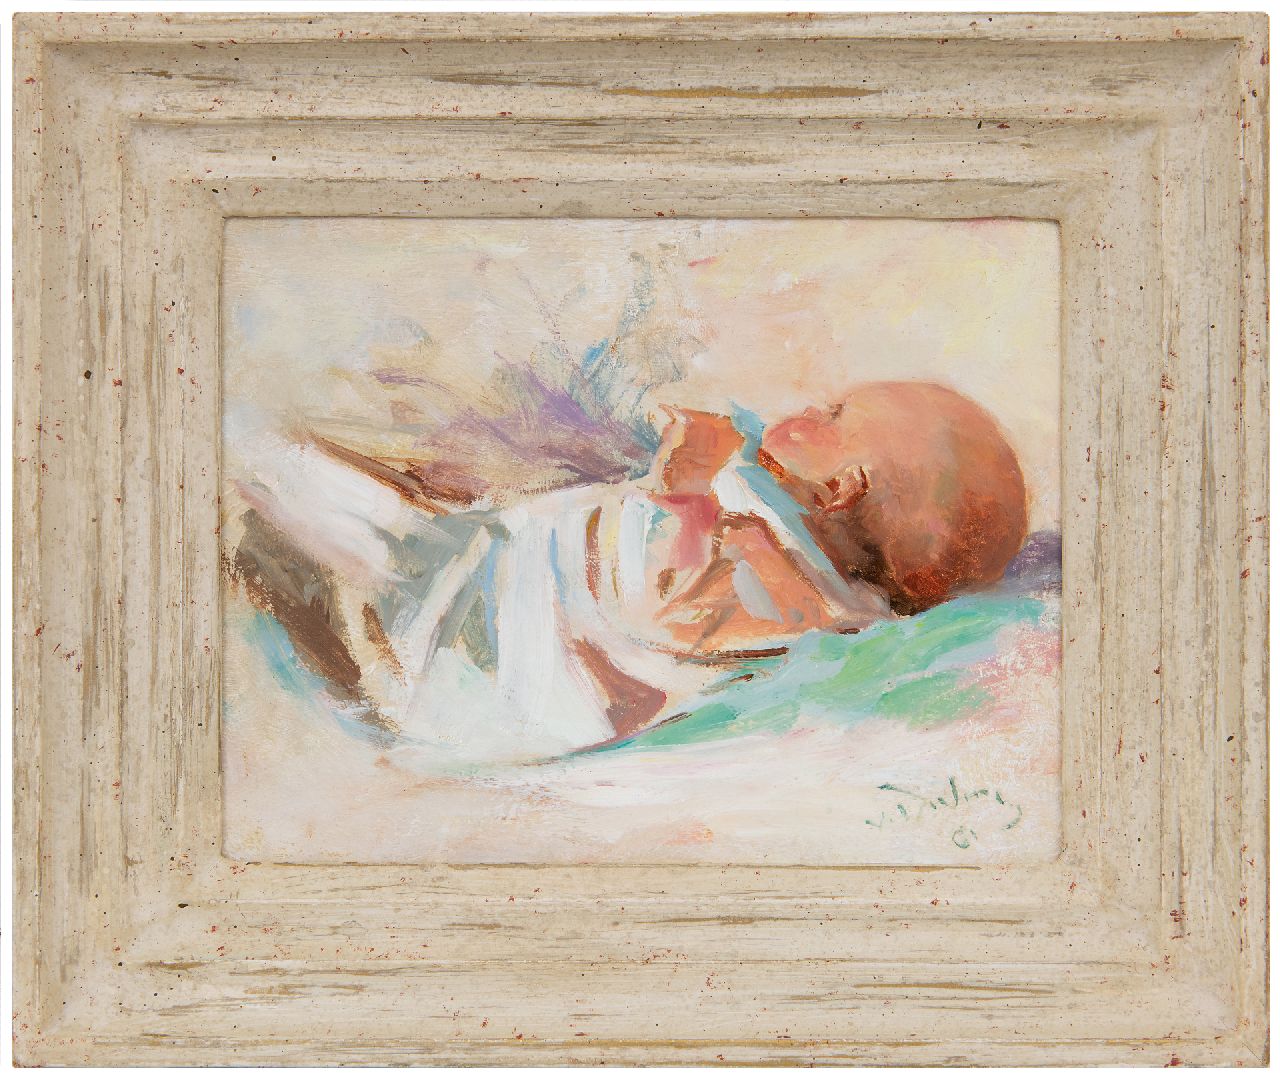 Dülmen Krumpelmann E.B. von | Erasmus Bernhard von Dülmen Krumpelmann | Paintings offered for sale | A baby, oil on panel 18.5 x 23.8 cm, signed l.r.